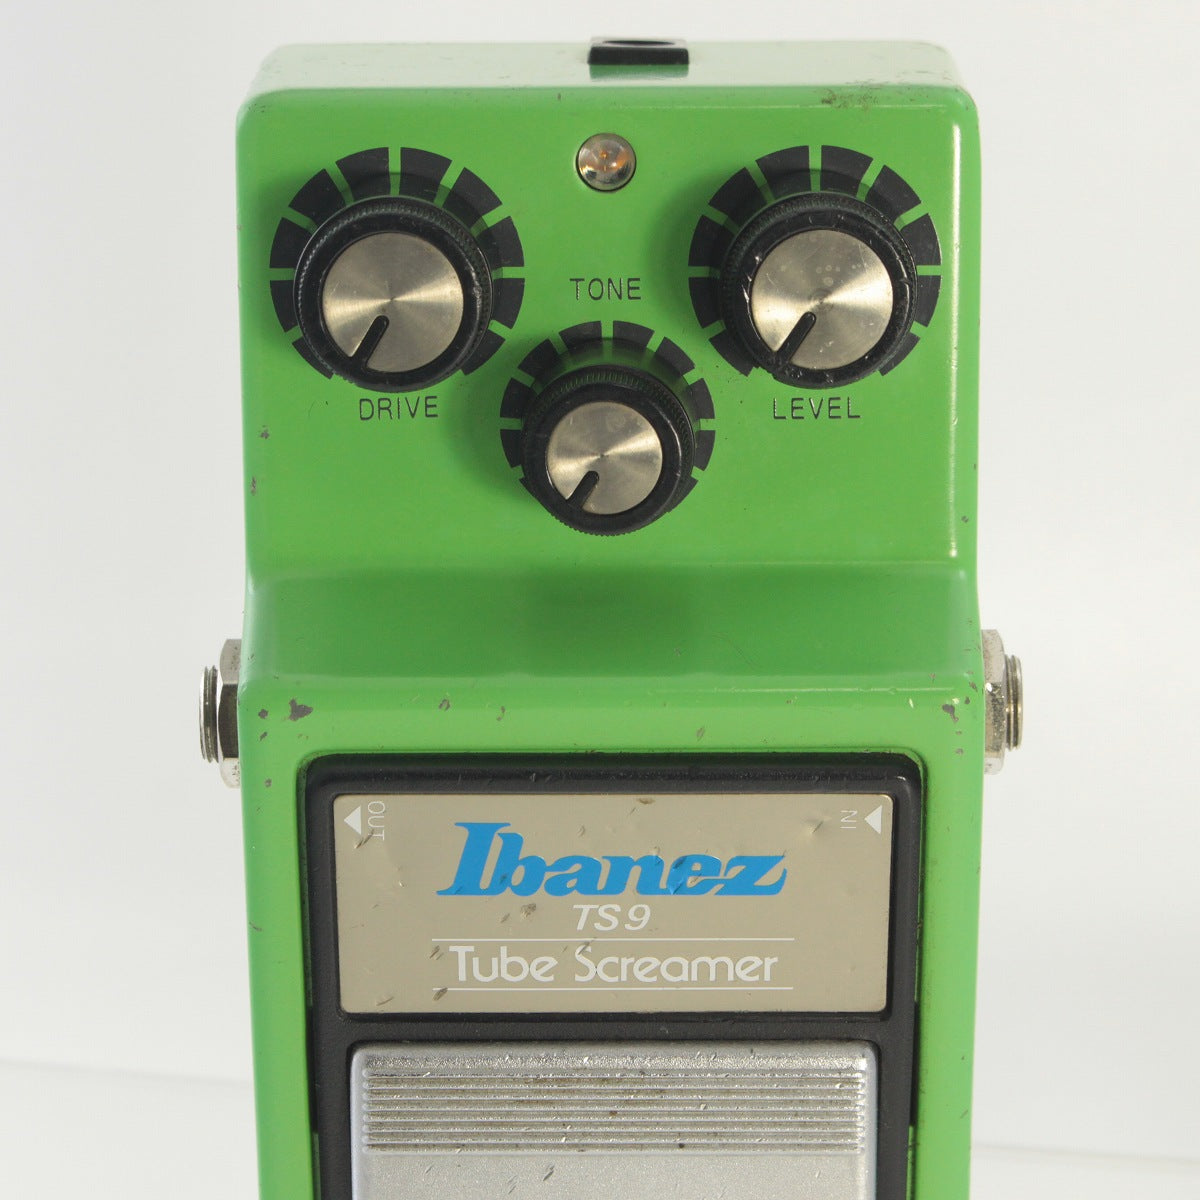 [SN 334790] USED IBANEZ / TS9 Tube Screamer 1983 [03]